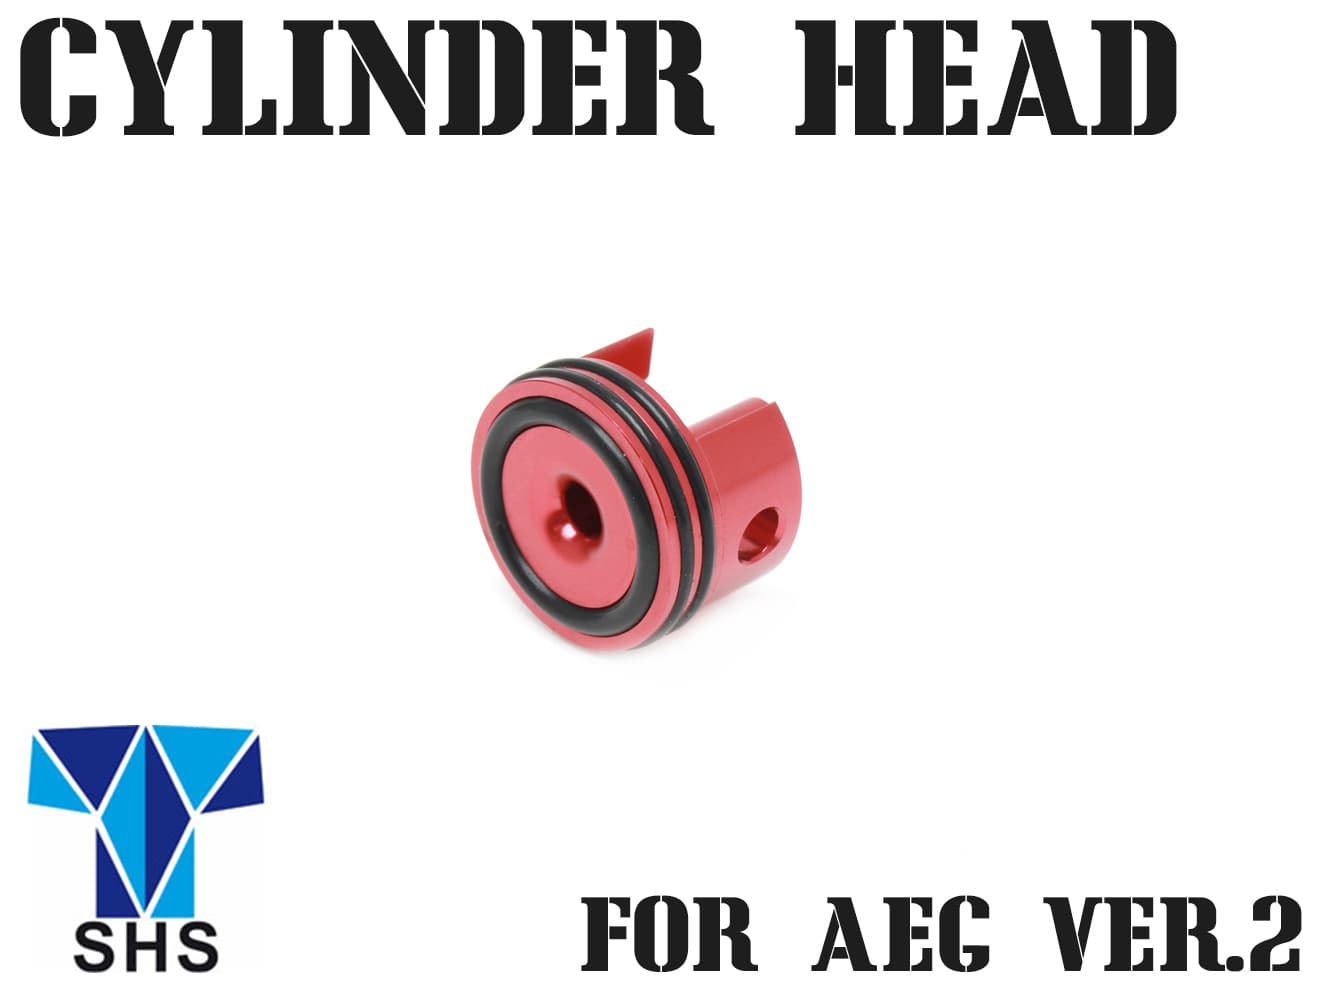 SHS 一体型アルミシリンダーヘッド テーパーS Ver.2メカボックス用◆シリンダーヘッド/M4/アルミヘッド/スタンダード電動ガン